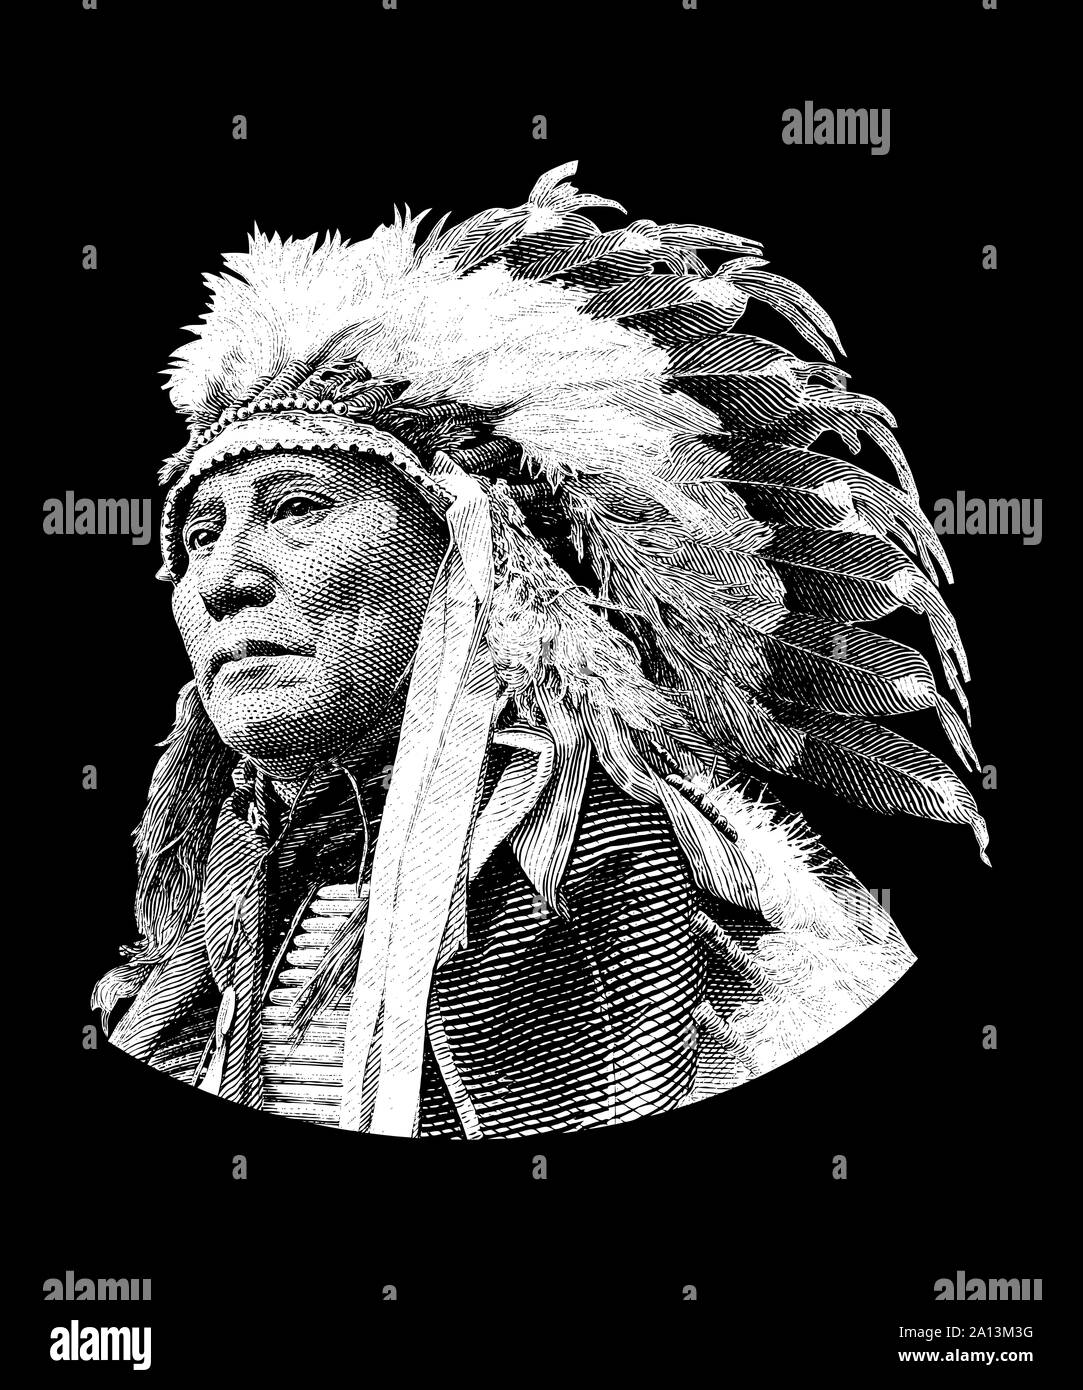 La conception de l'histoire amérindienne de corne creuse chef Bear, un chef Lakota Brule. Banque D'Images